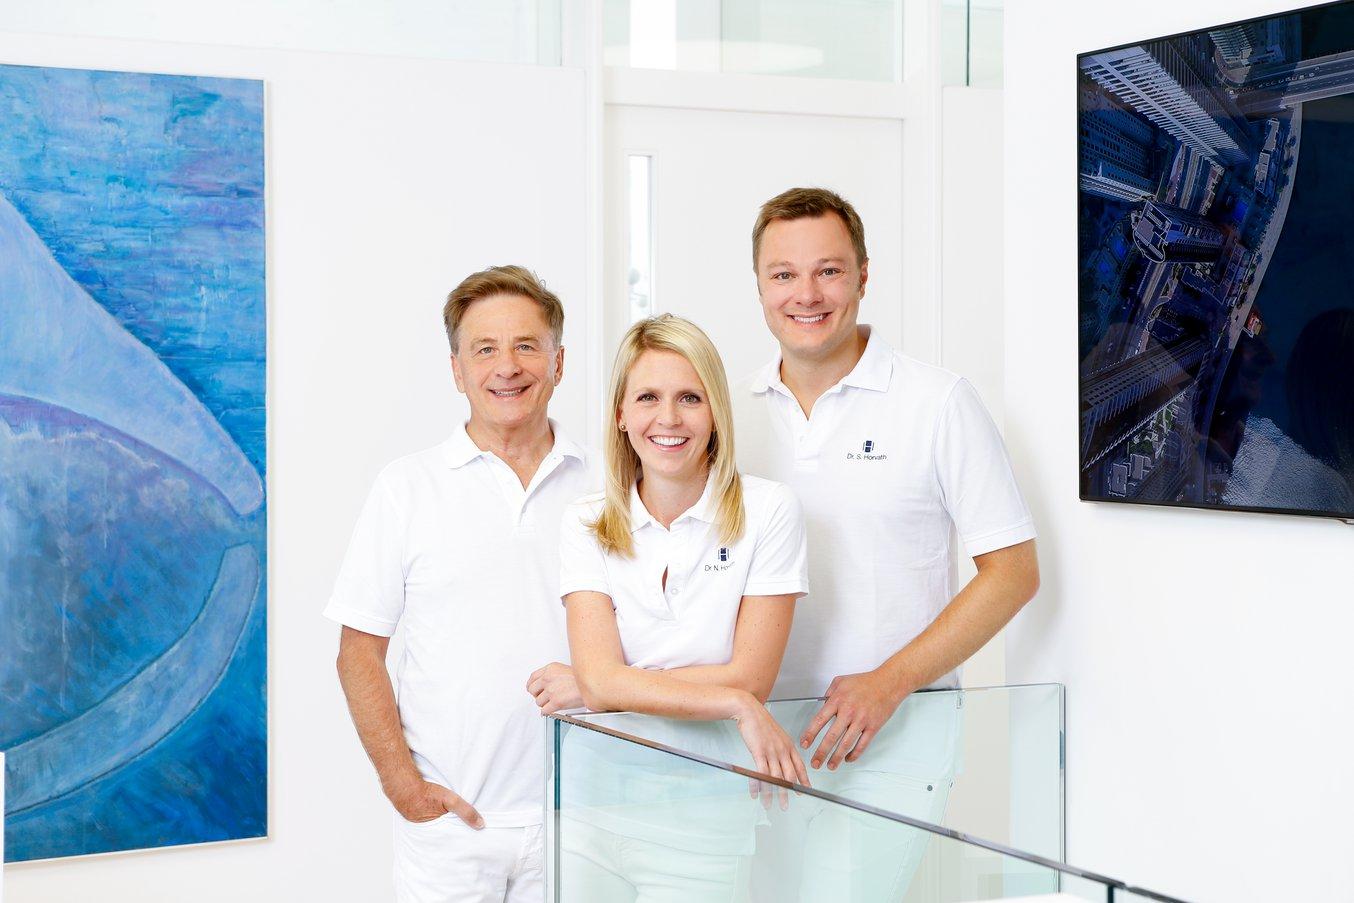 Il dottor Sebastian Horvath (a destra) gestisce lo studio di famiglia con la moglie, la dottoressa Nicole Horvath, ortodonzista, e il padre, il dottor Domonkos Horvath, anche lui dentista.